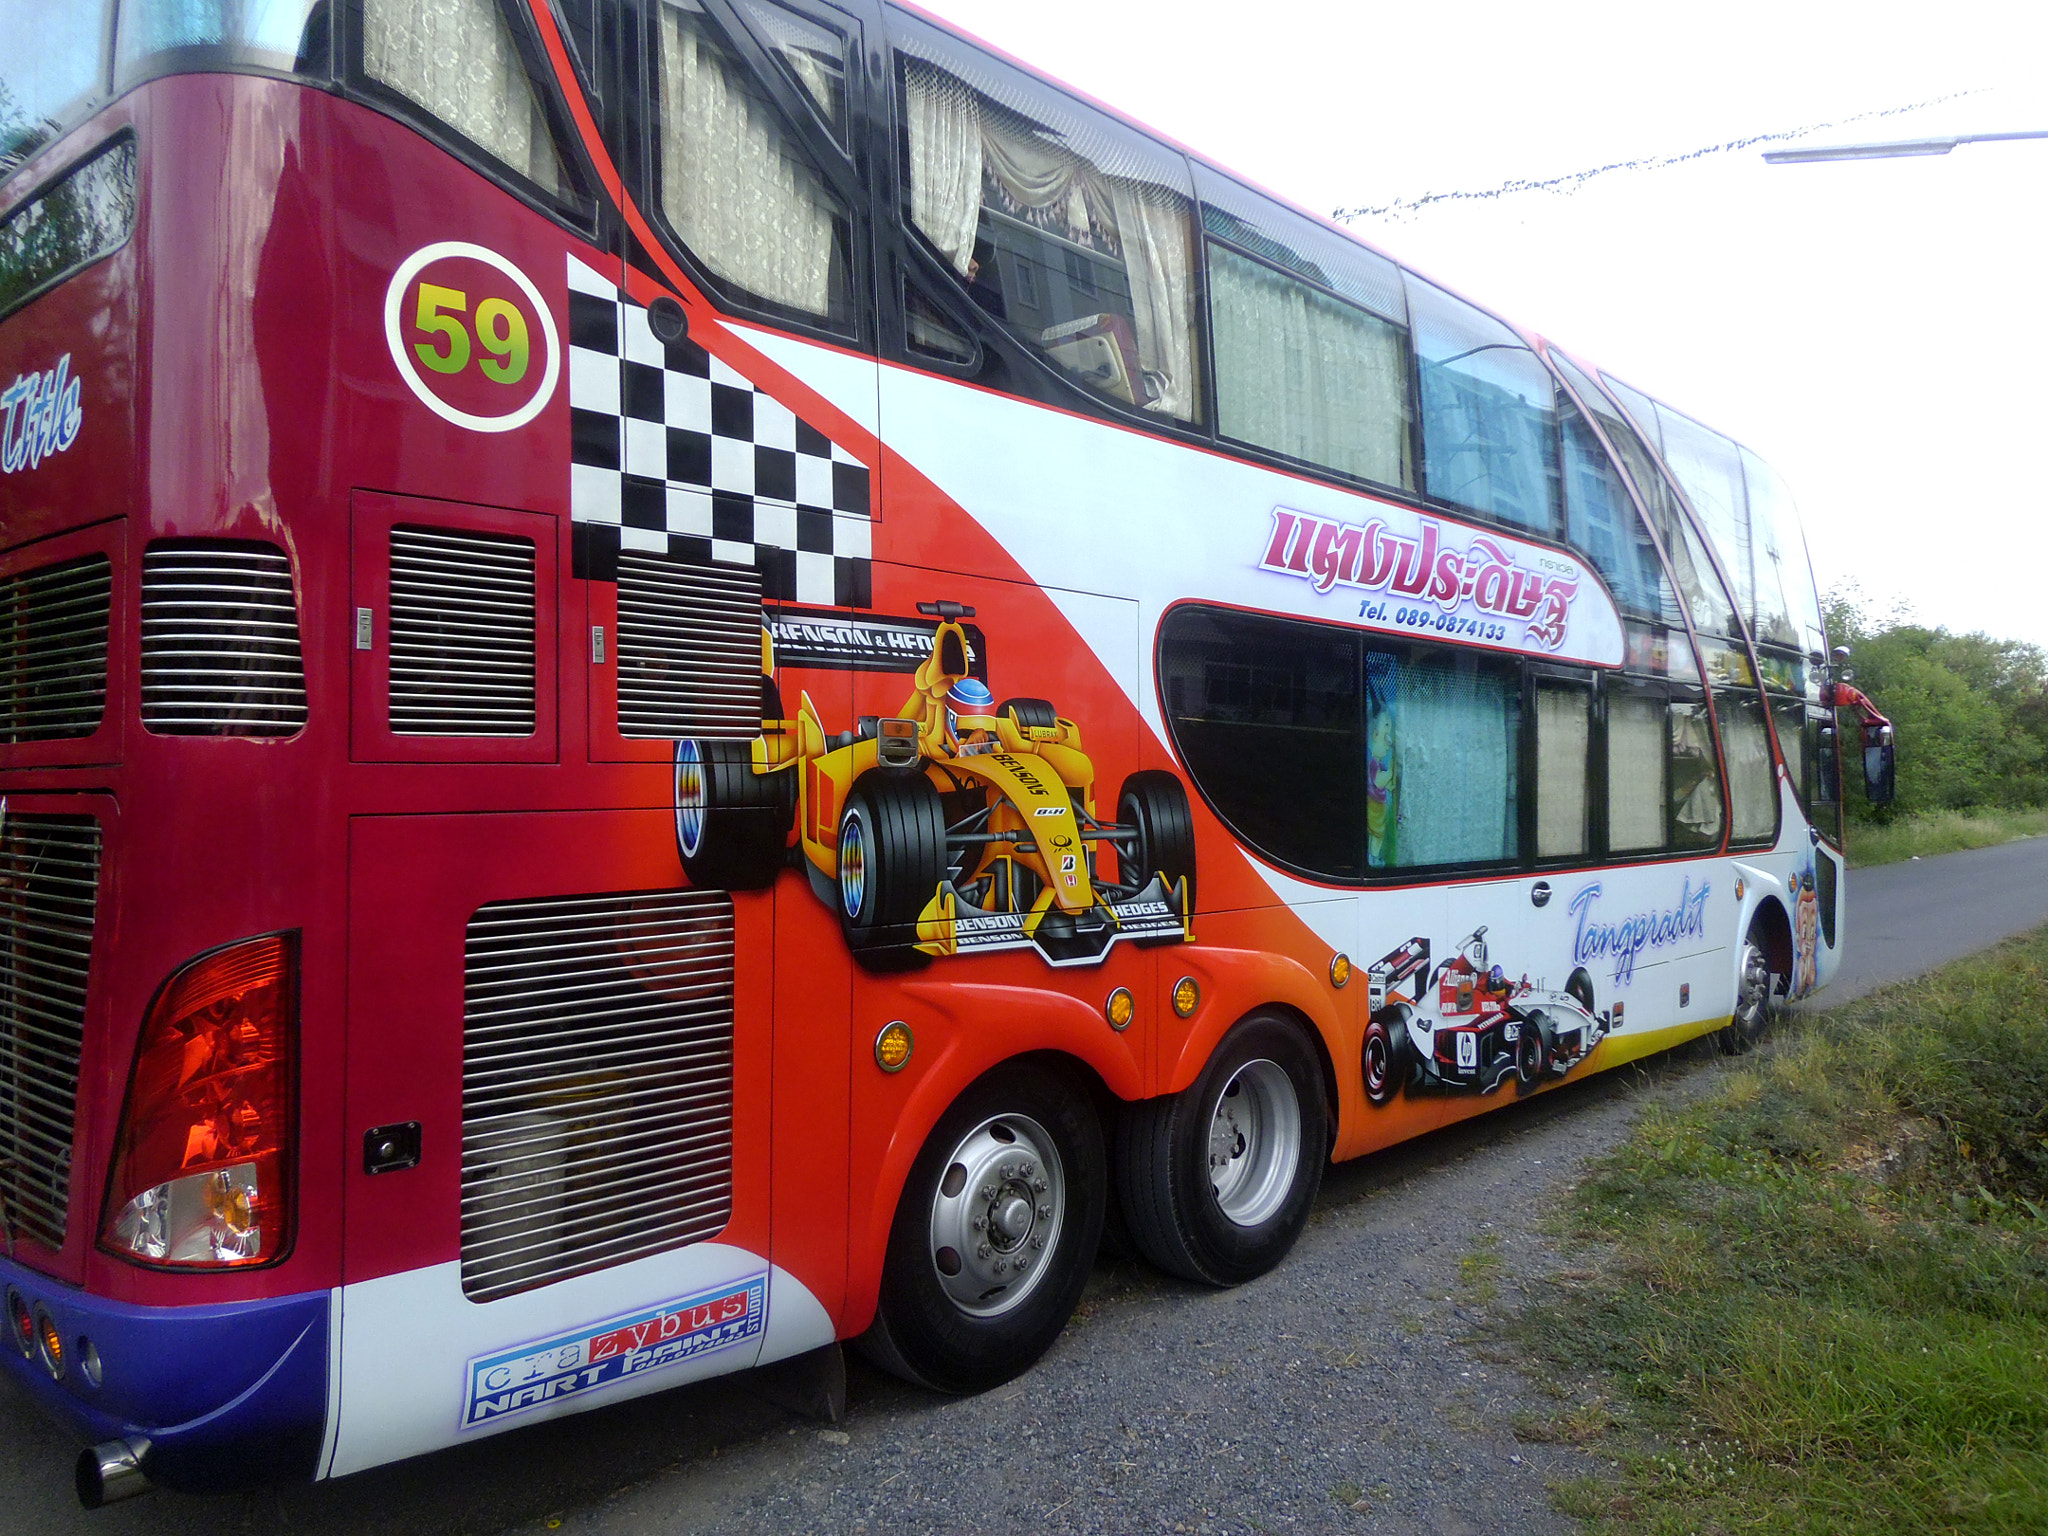 Panasonic DMC-LS5 sample photo. Bangkok tour bus photography